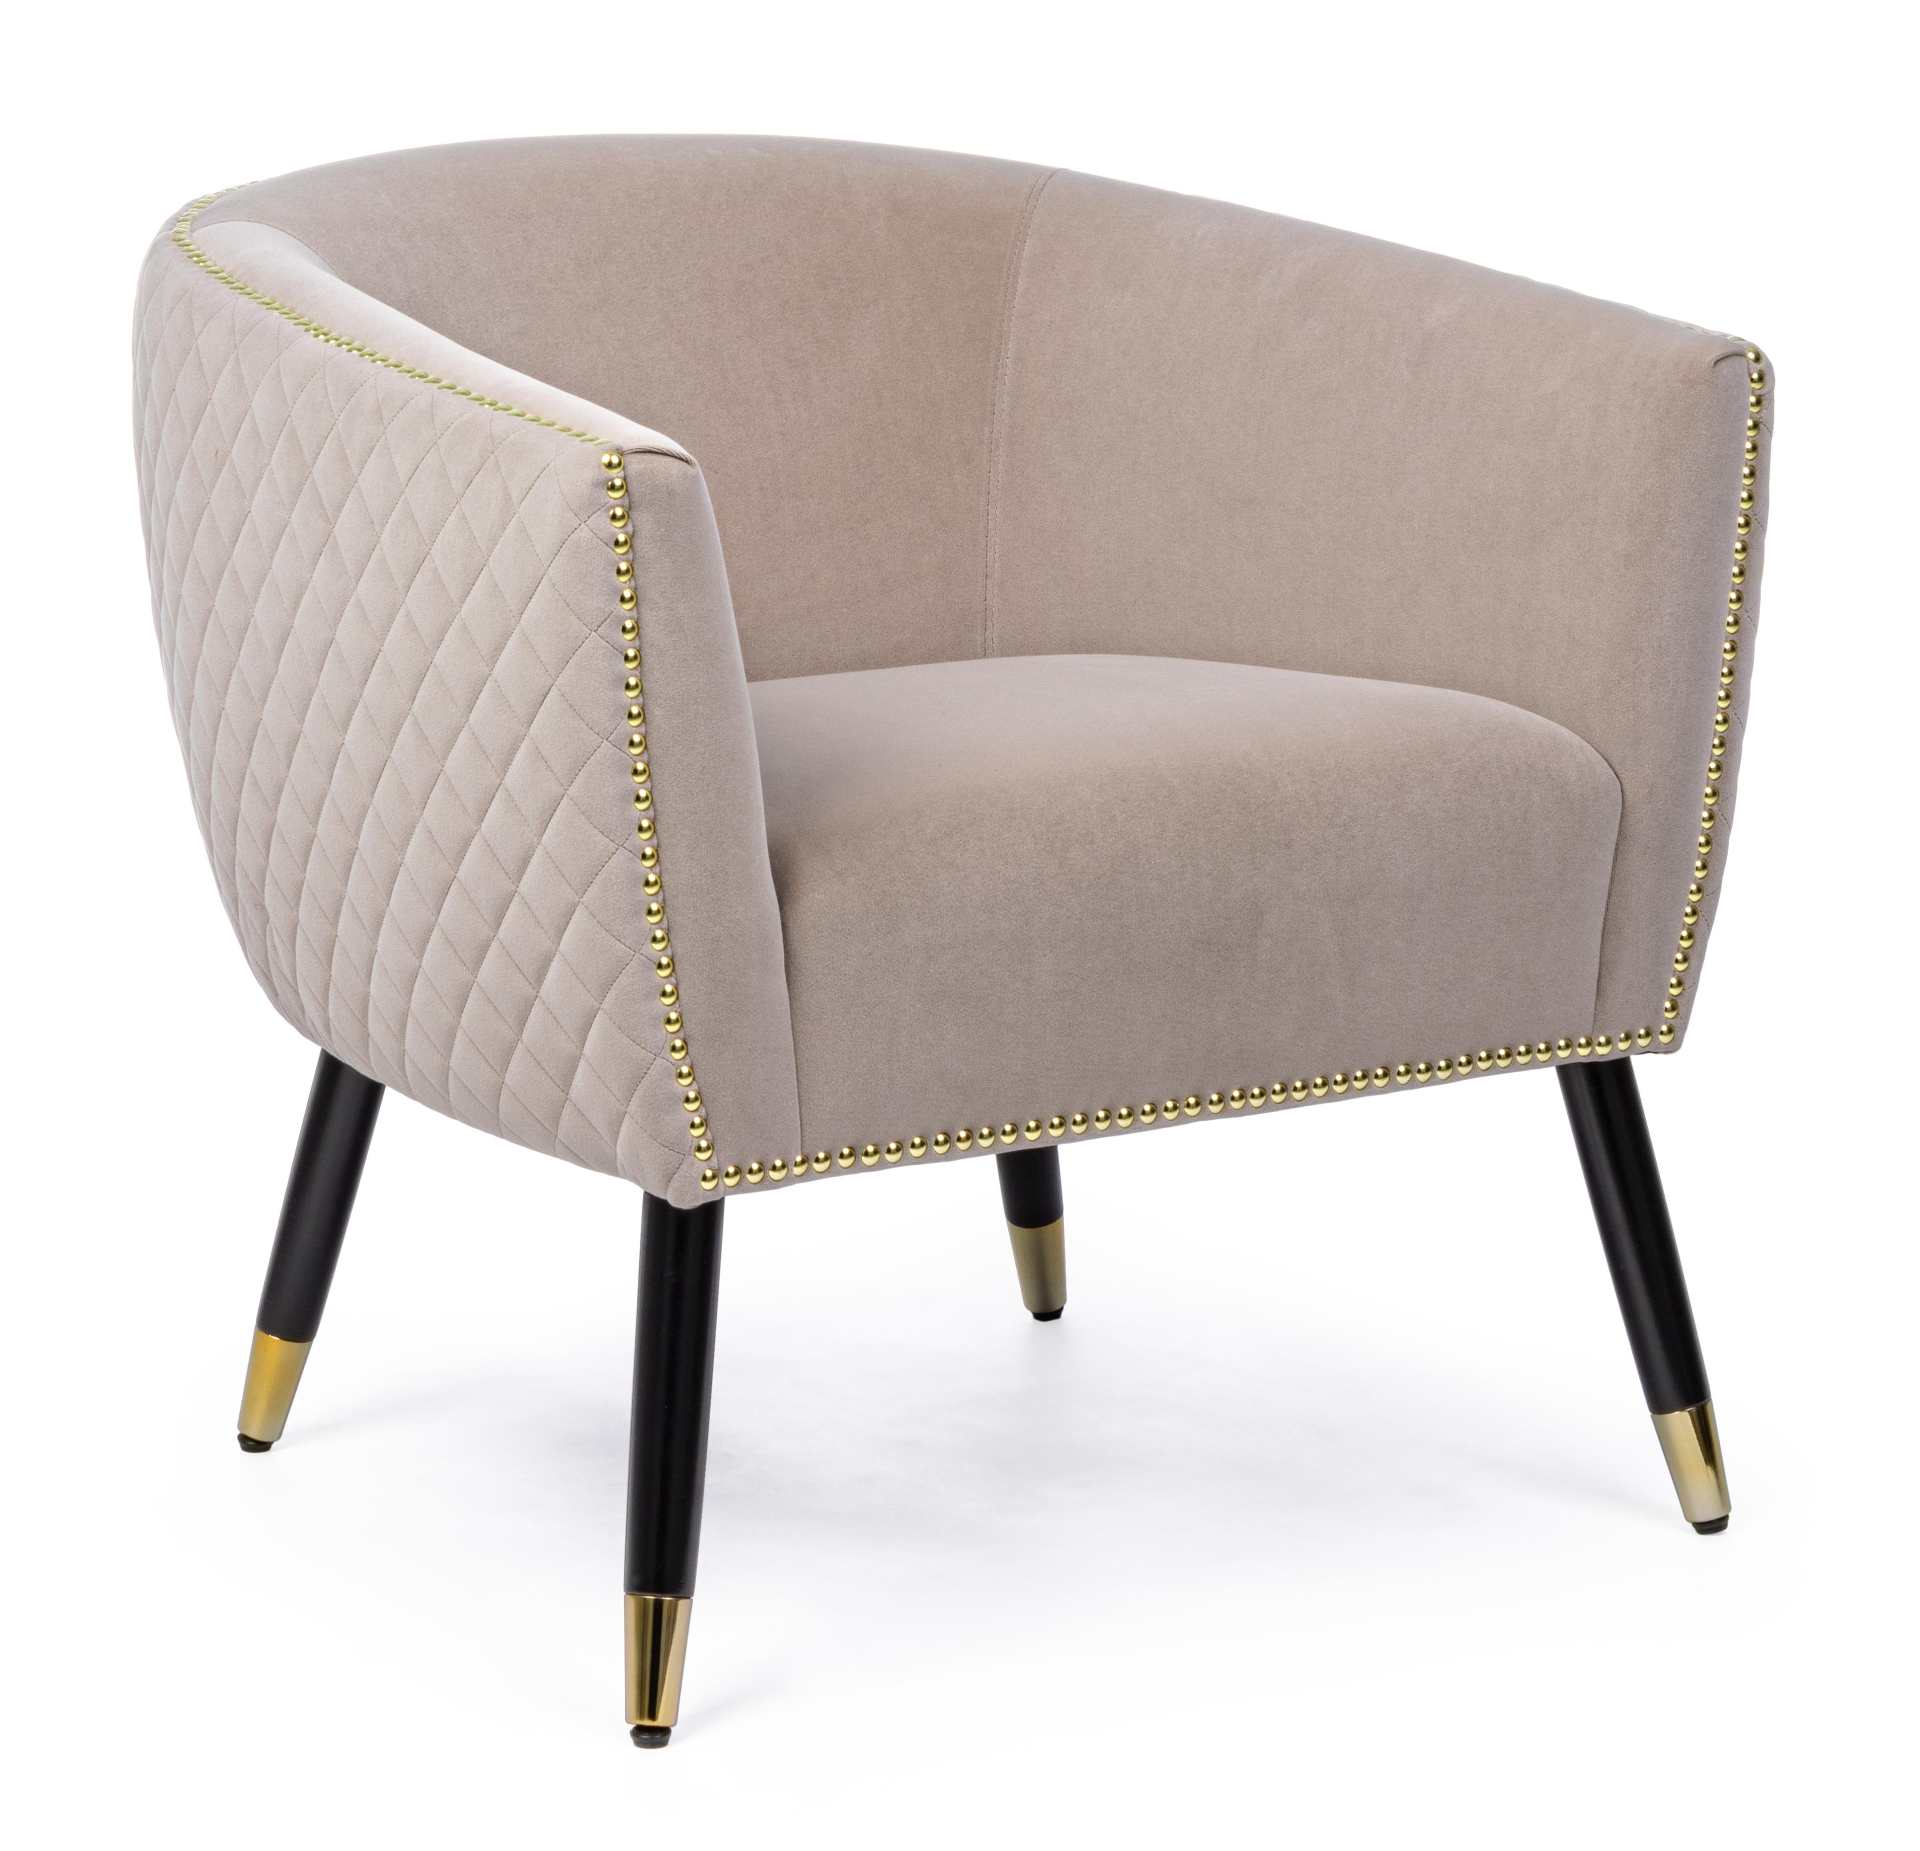 Der Sessel Caitlin überzeugt mit seinem modernen Design. Gefertigt wurde er aus Stoff in Samt-Optik, welcher einen hellgrauen Farbton besitzt. Das Gestell ist aus Kautschukholz und hat eine schwarze Farbe. Der Sessel besitzt eine Sitzhöhe von 45 cm. Die B